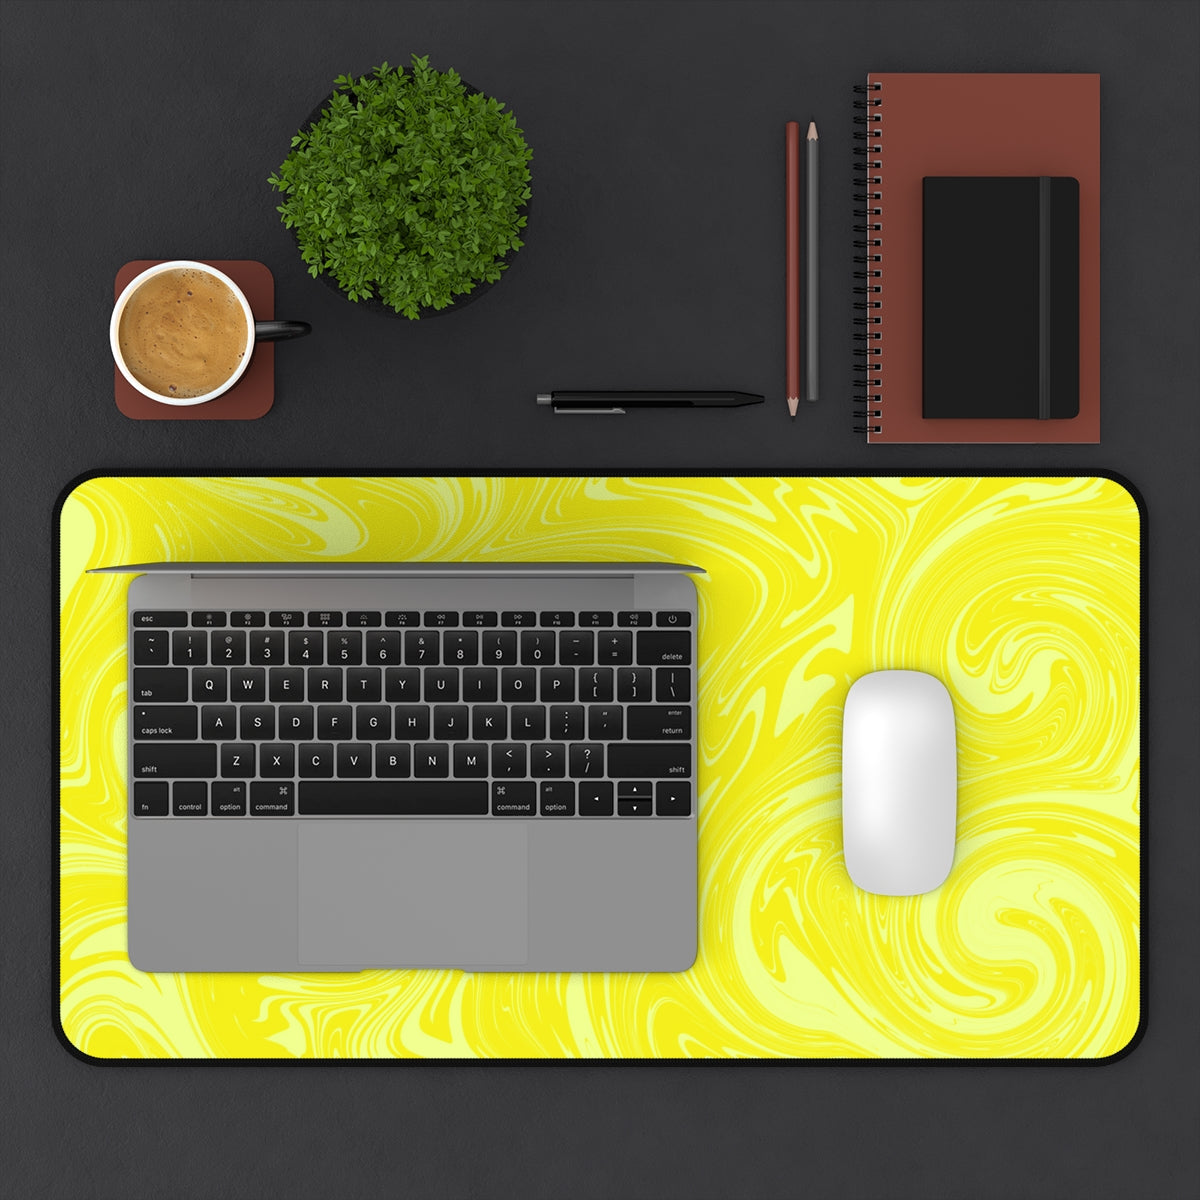 Yellow Swirl Desk Mat - Desk Cookies